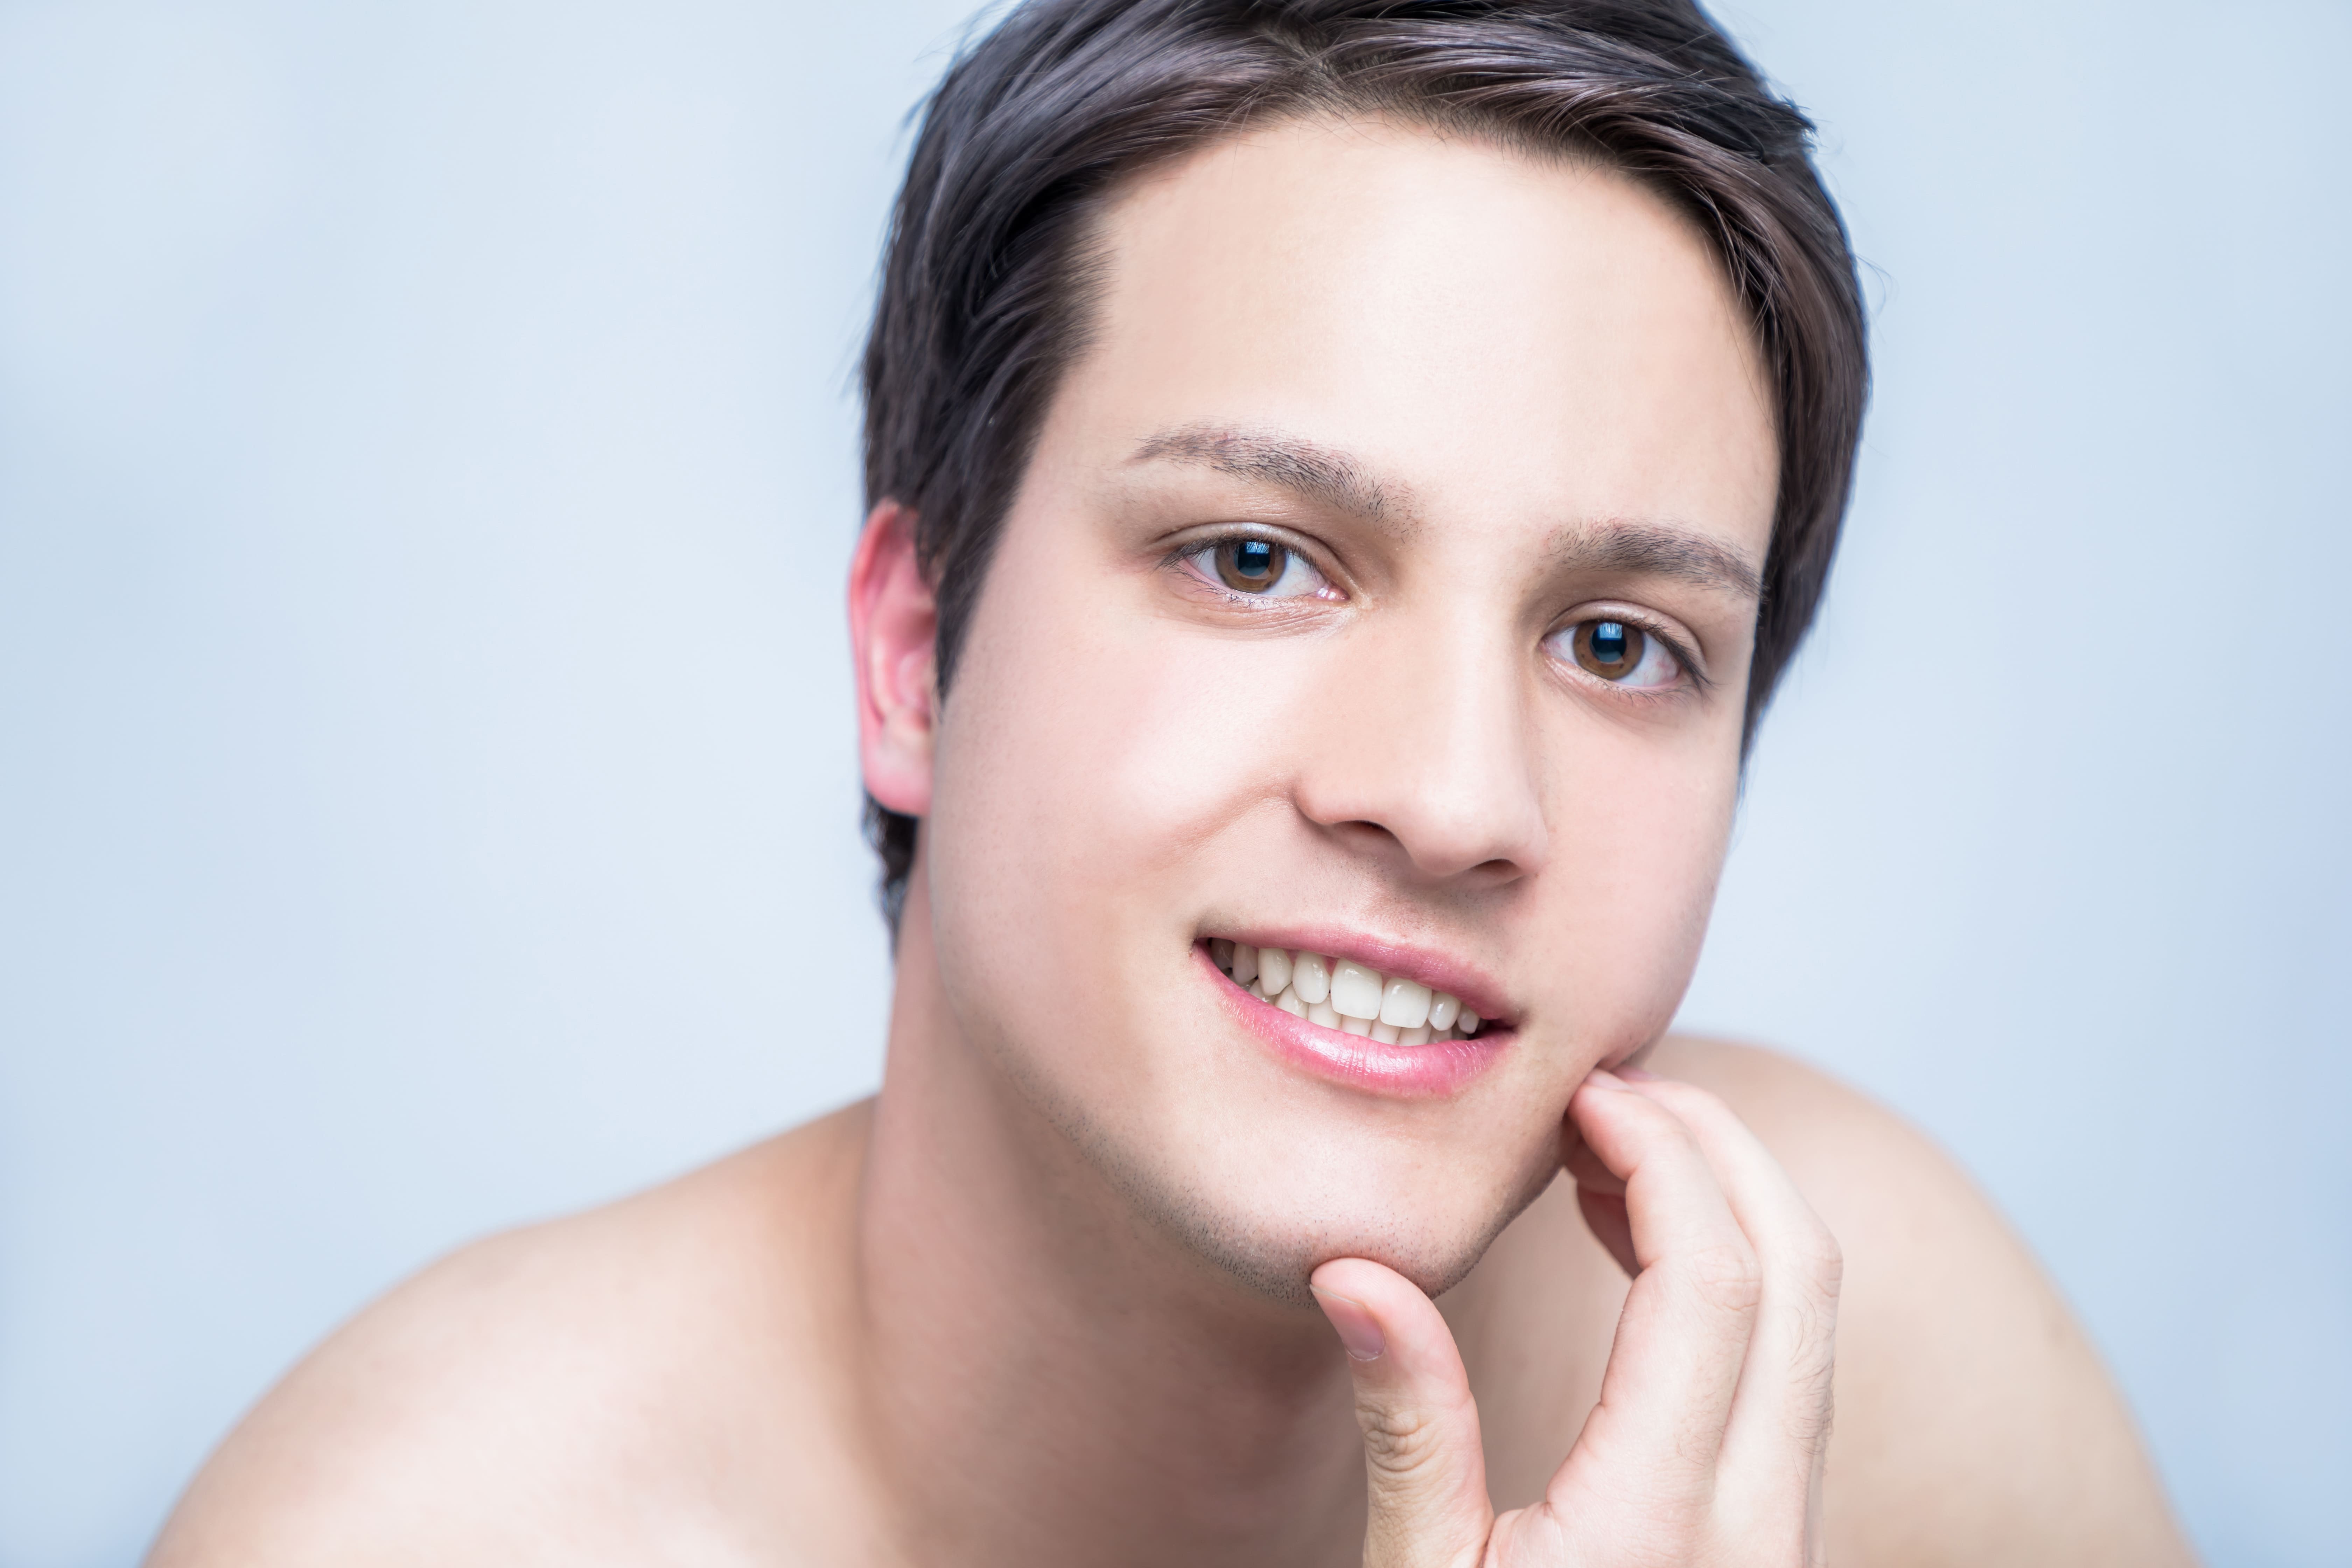 メンズクリアのヒゲ脱毛ガイド 料金 効果 サービス品質を口コミと共に徹底調査